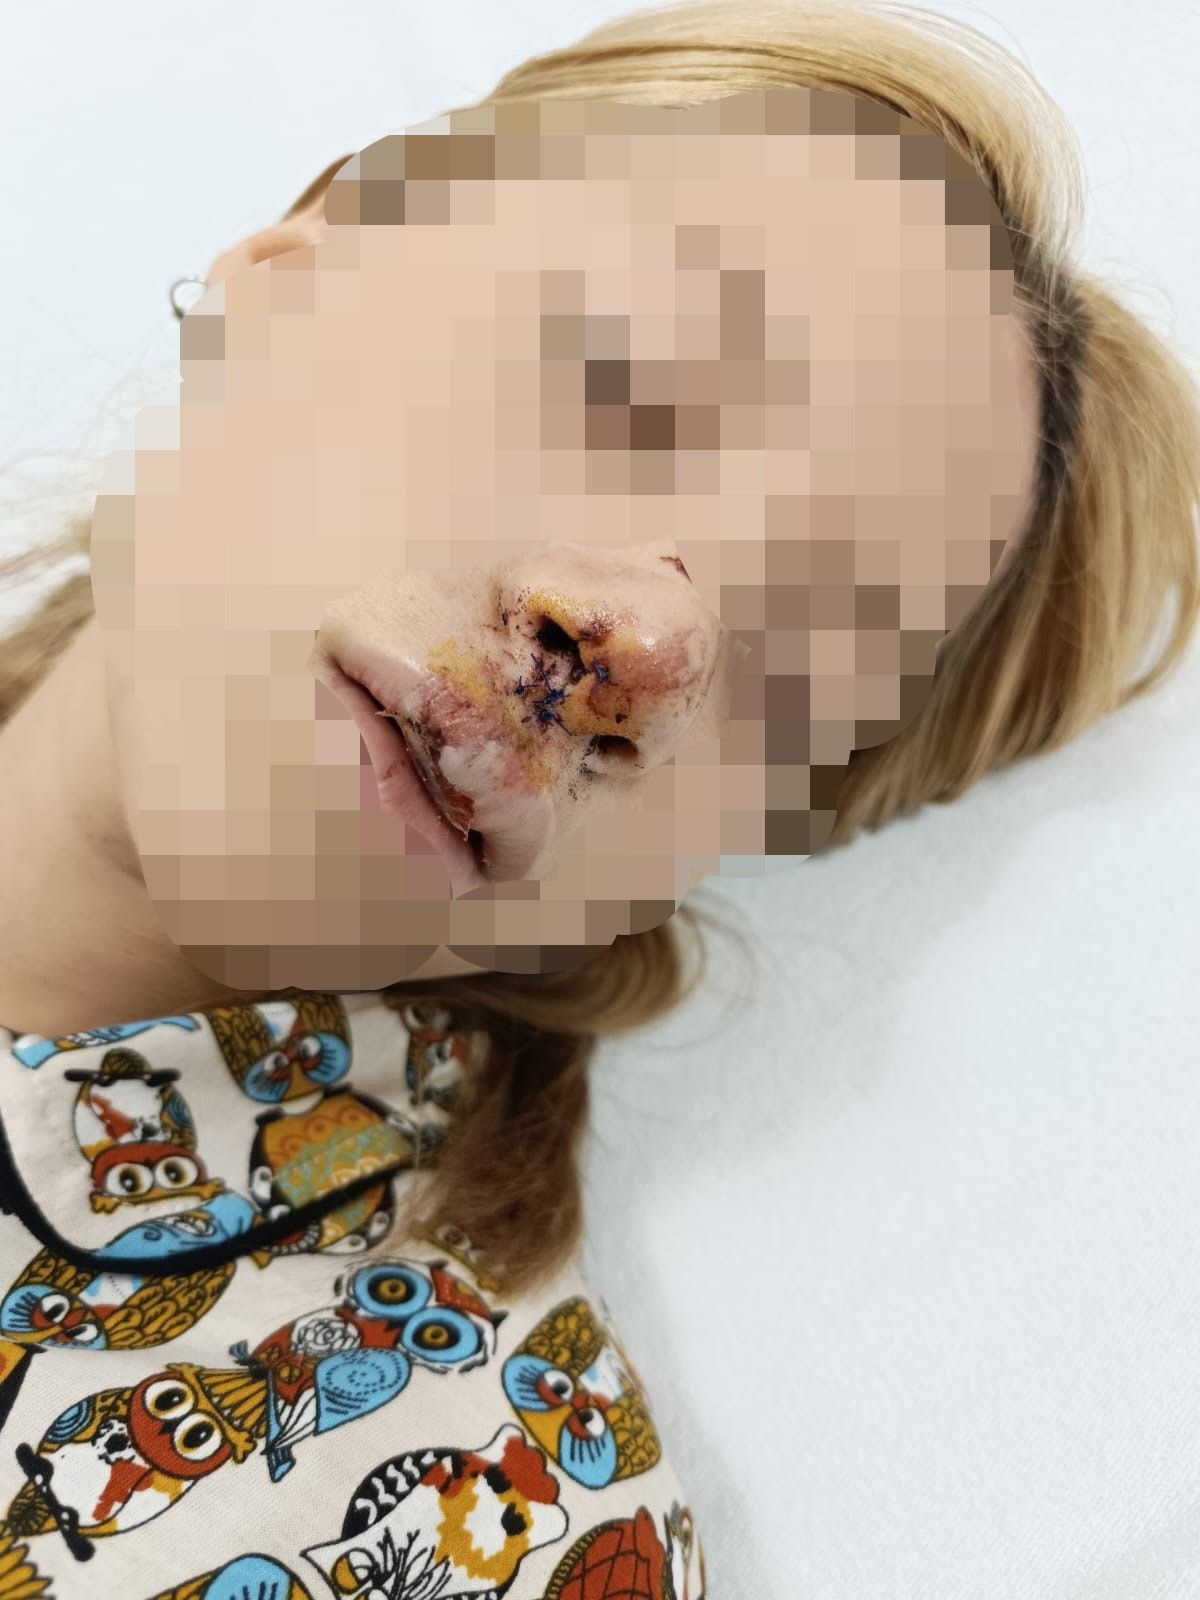 İstanbu'da dehşet! Genç kızın dişlerini kaldırım taşı ile kırdılar, yanındaki erkeğin kulağını kestiler